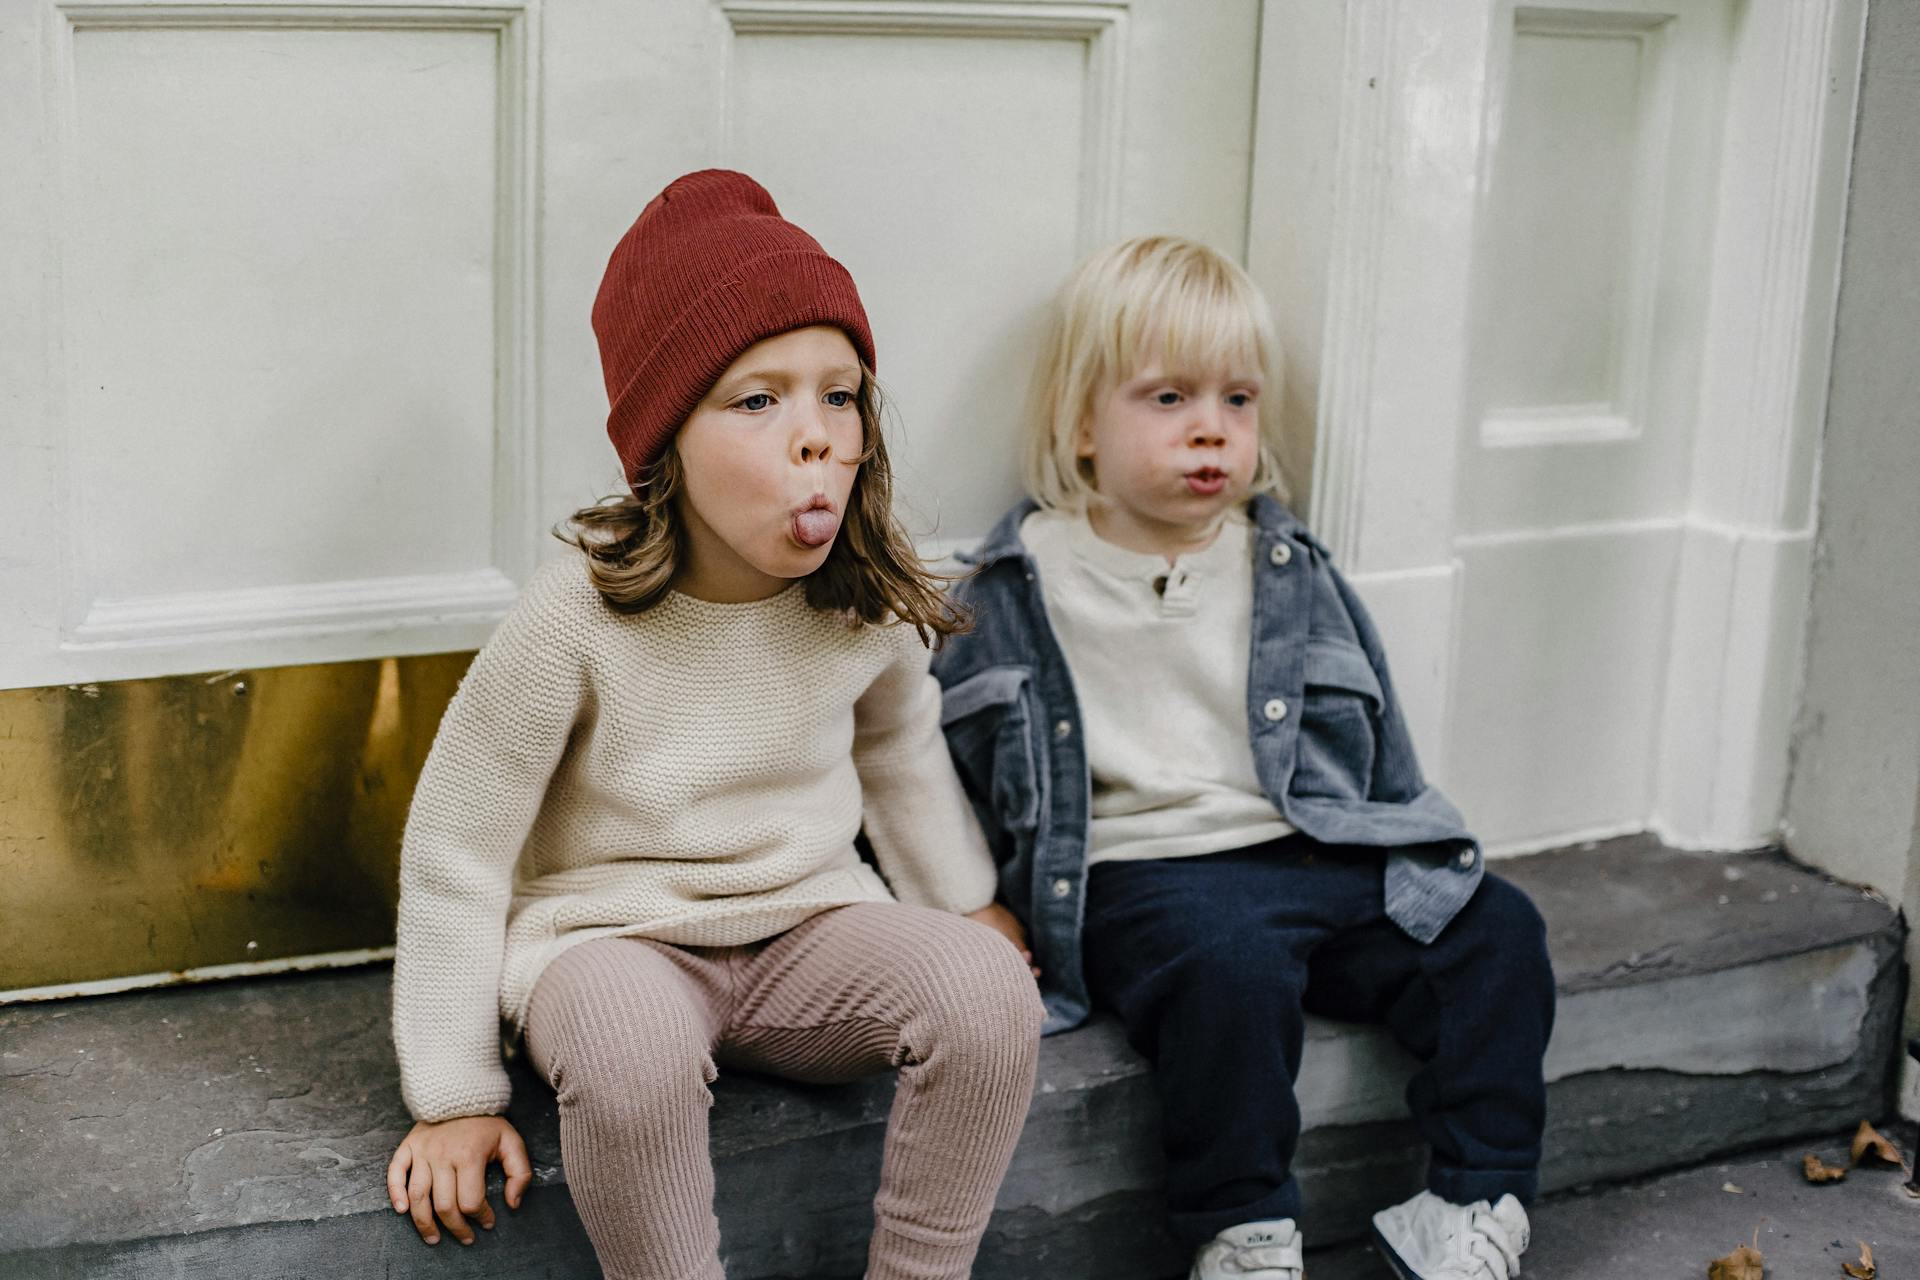 Deux enfants assis sous le porche font des grimaces | Source : Pexels